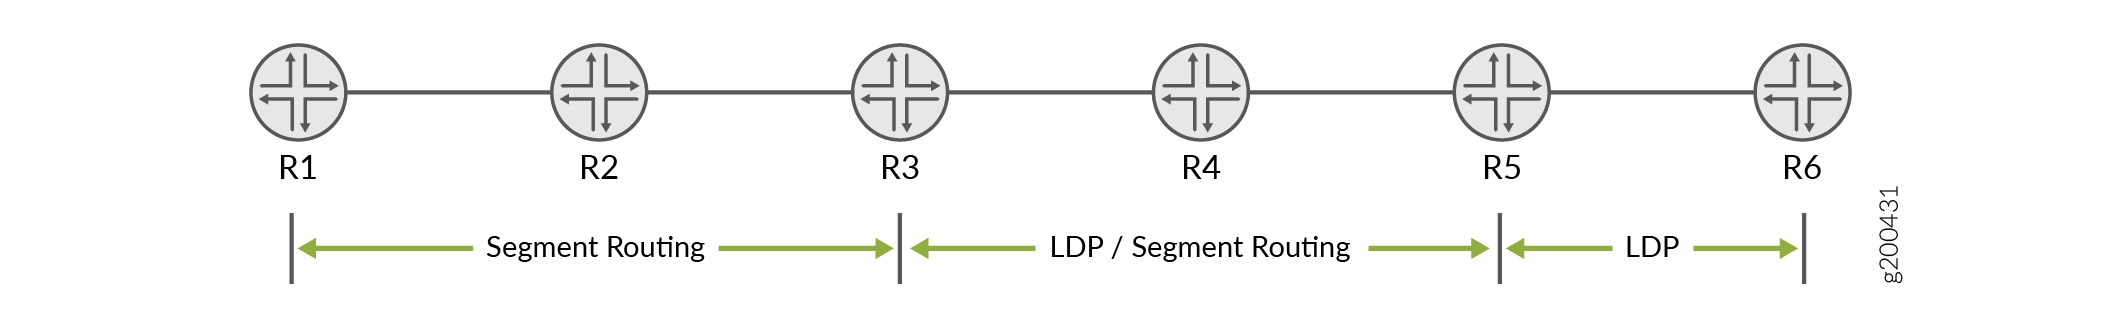 使用 OSPF 实现分段路由与 LDP 互操作性的 LDP 拓扑示例